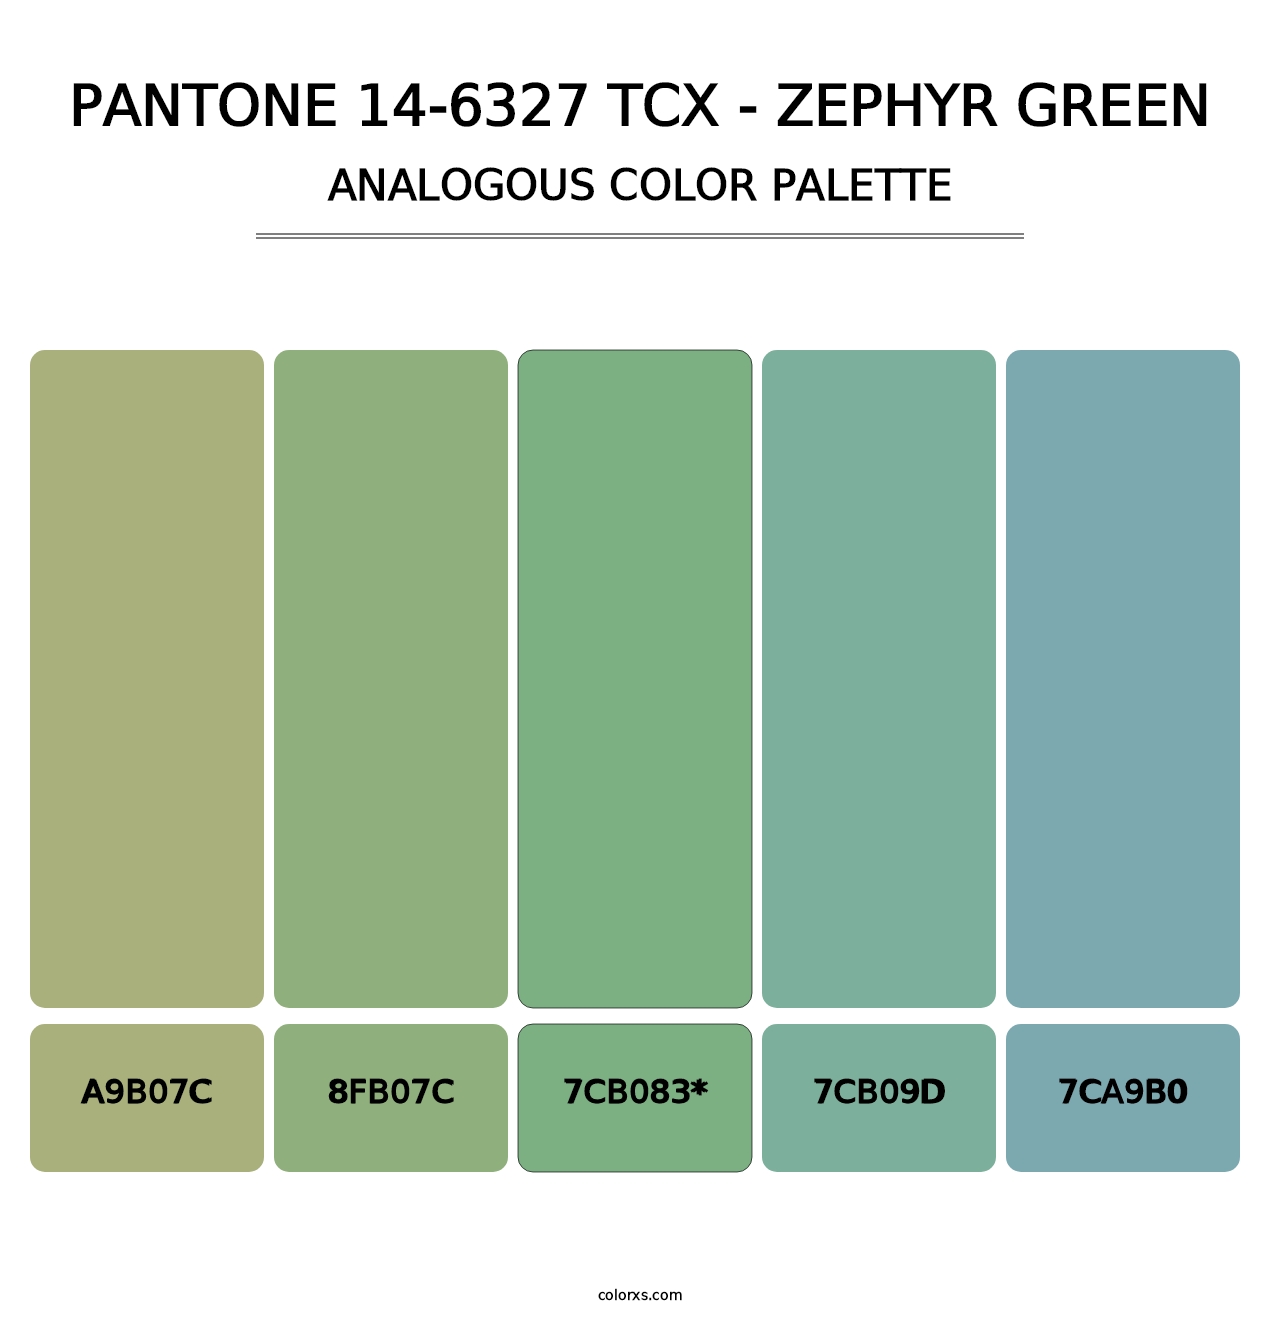 PANTONE 14-6327 TCX - Zephyr Green - Analogous Color Palette